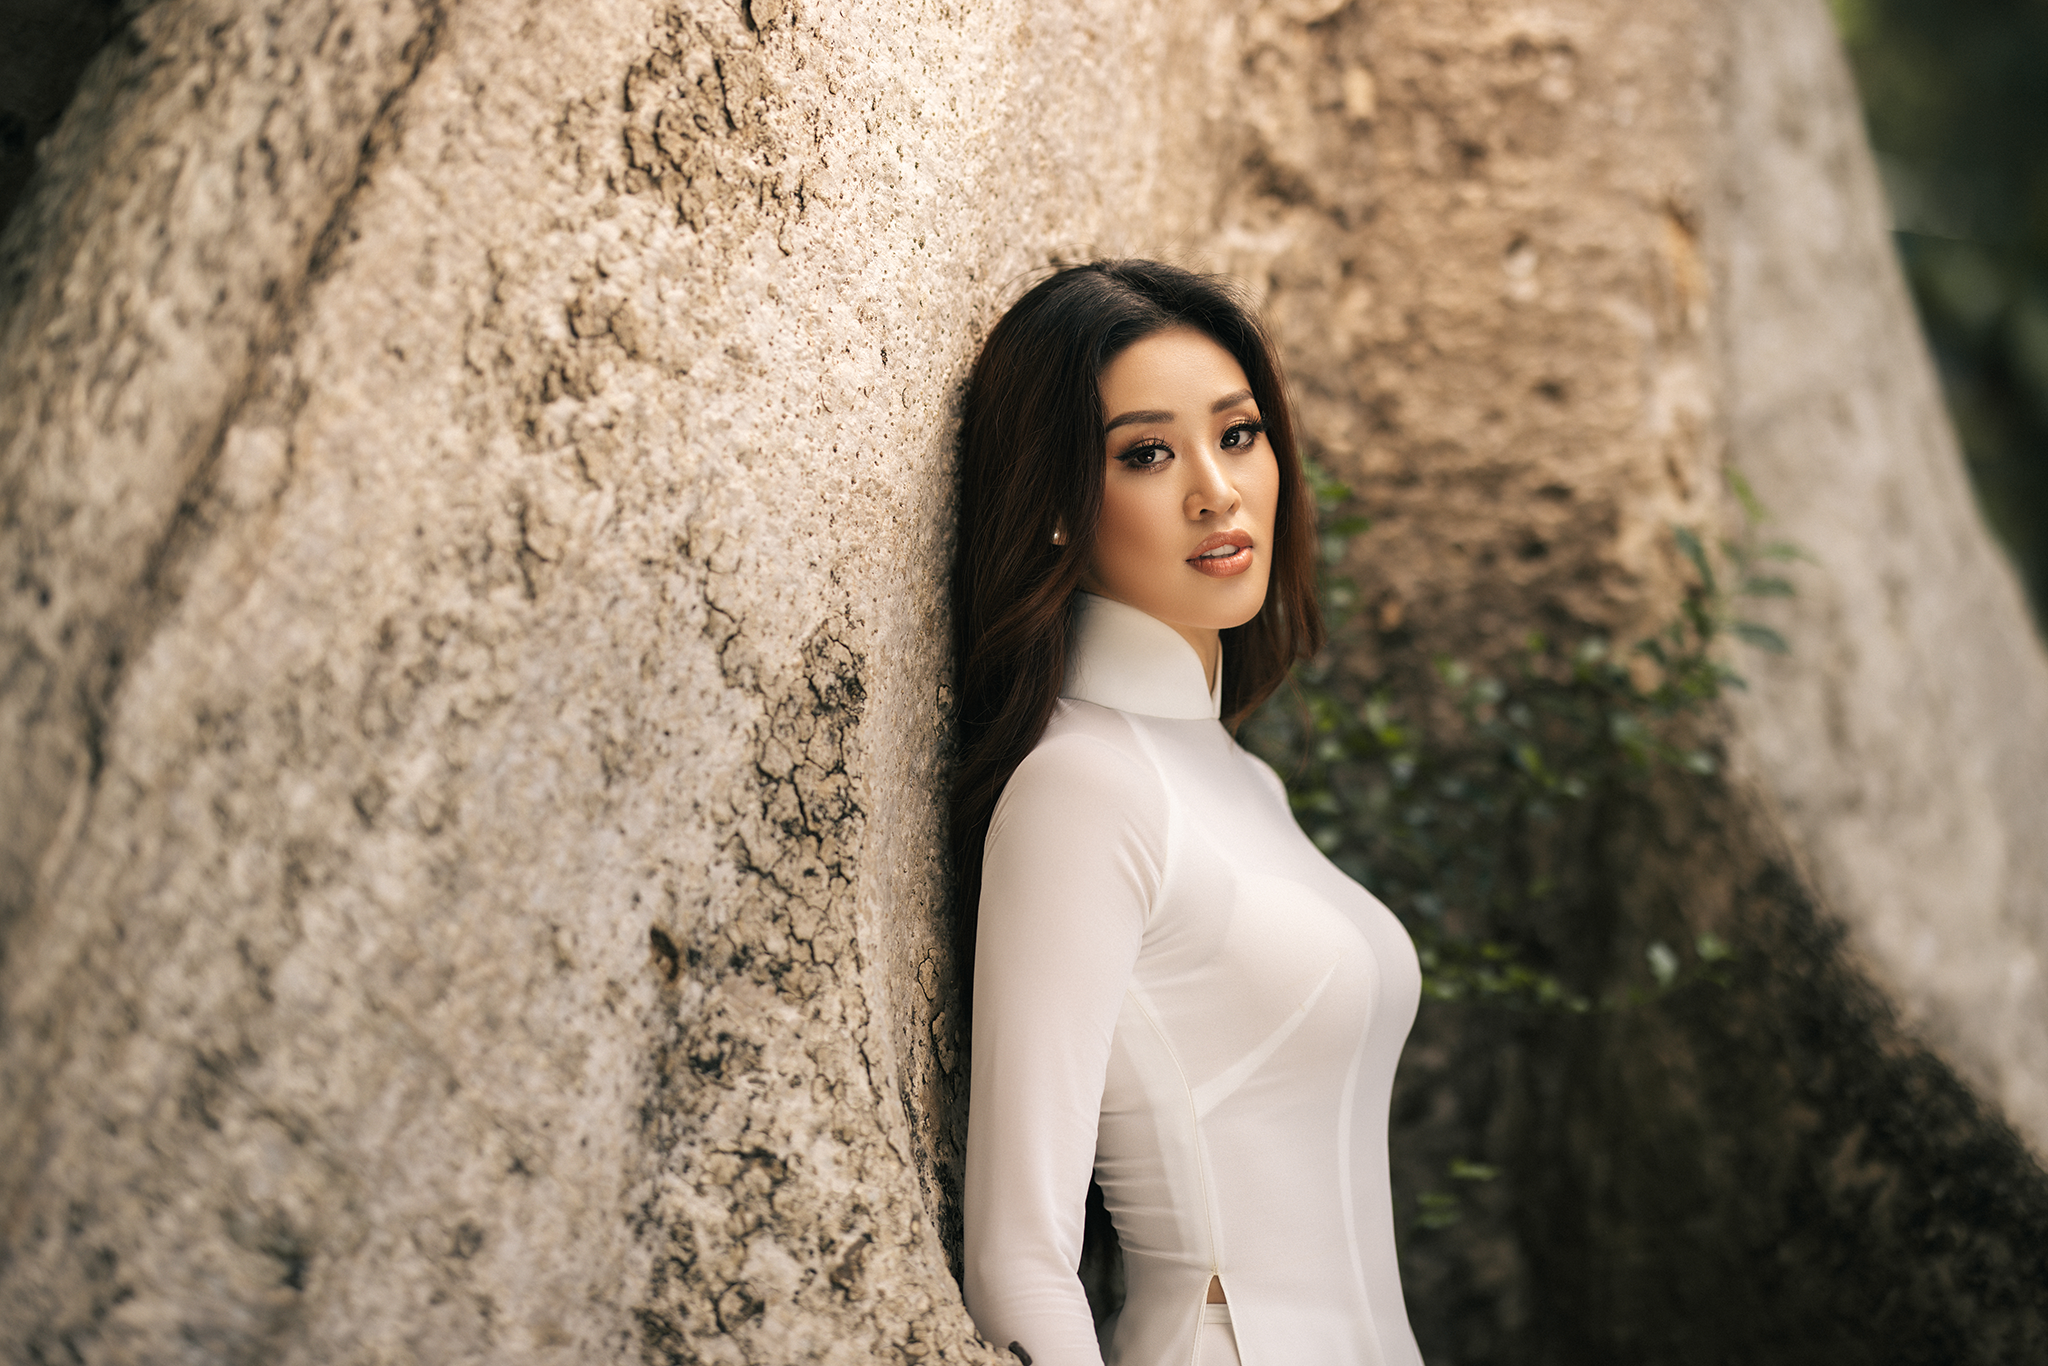 Hoa hậu Khánh Vân khoe vóc dáng chuẩn trong tà áo dài trắng